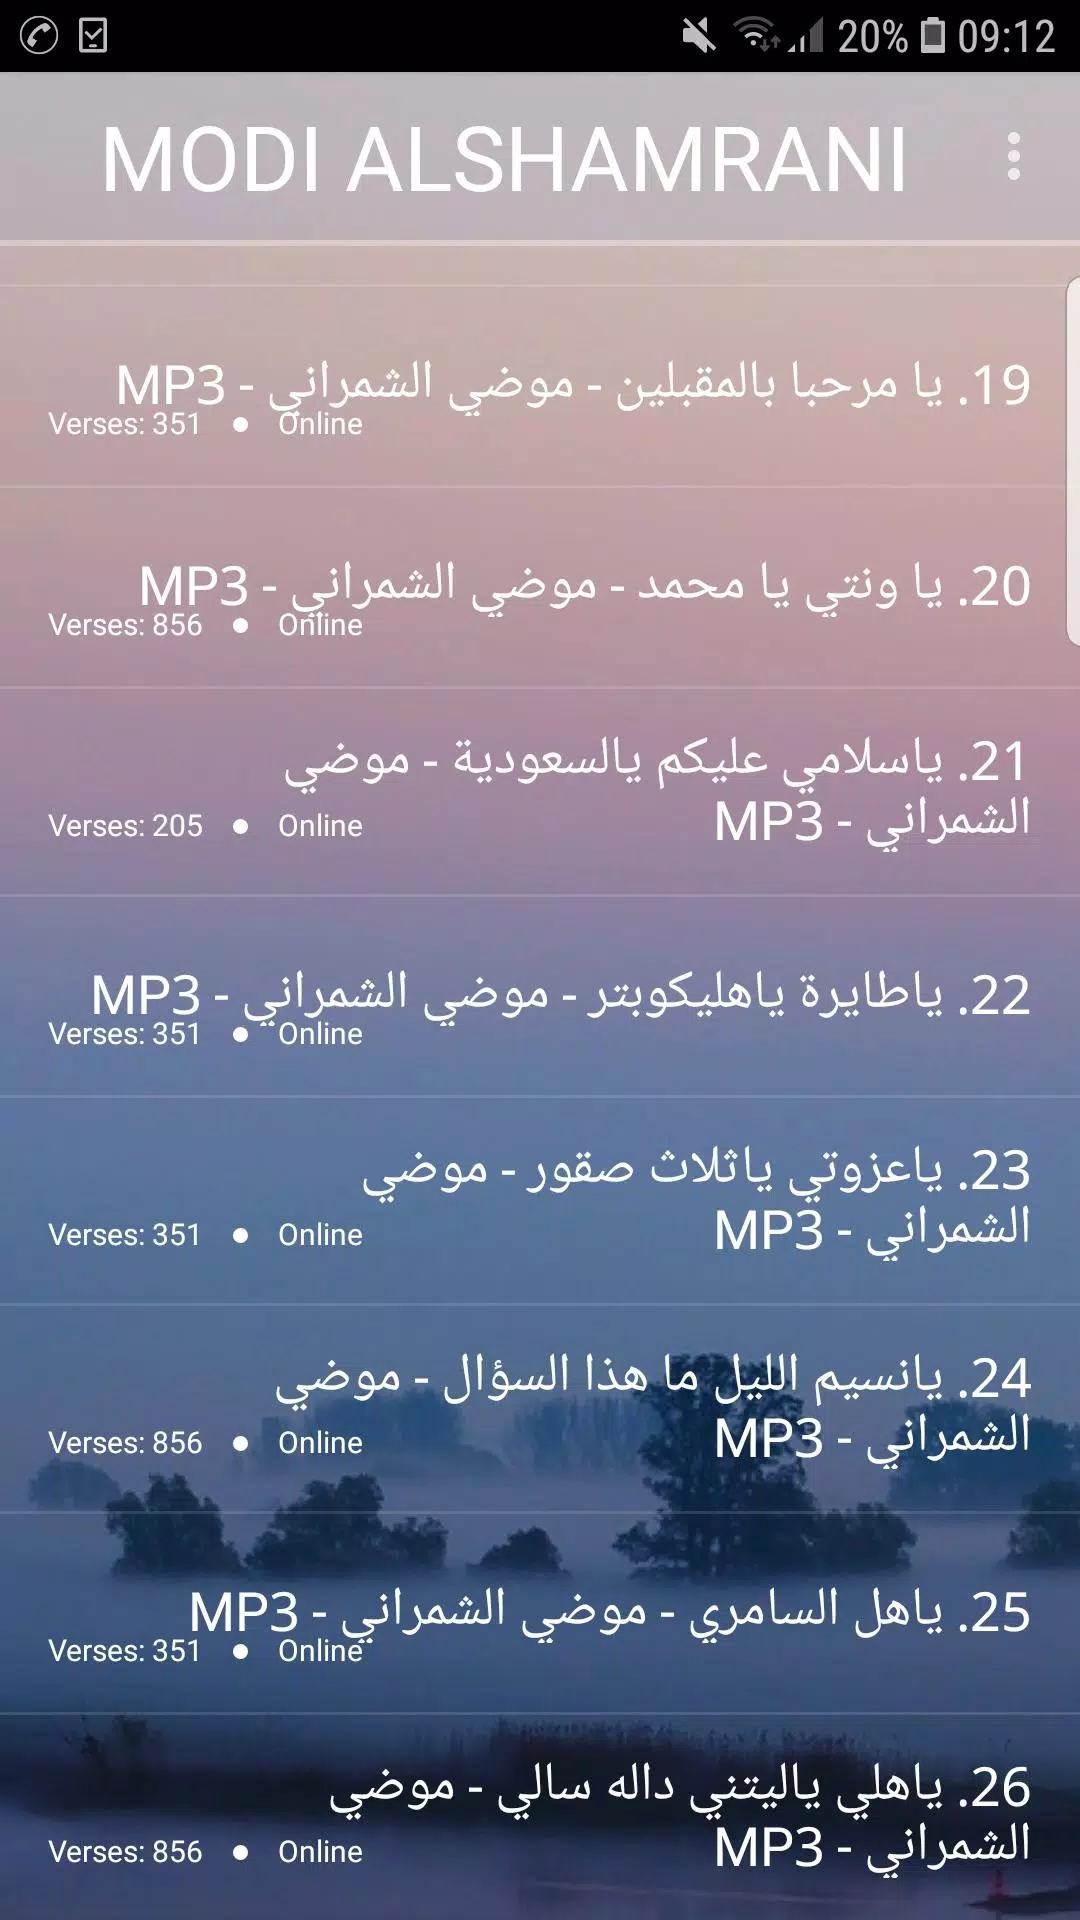 اغاني موضي الشمراني2019-aghani modi alshamrani mp3 APK for Android Download